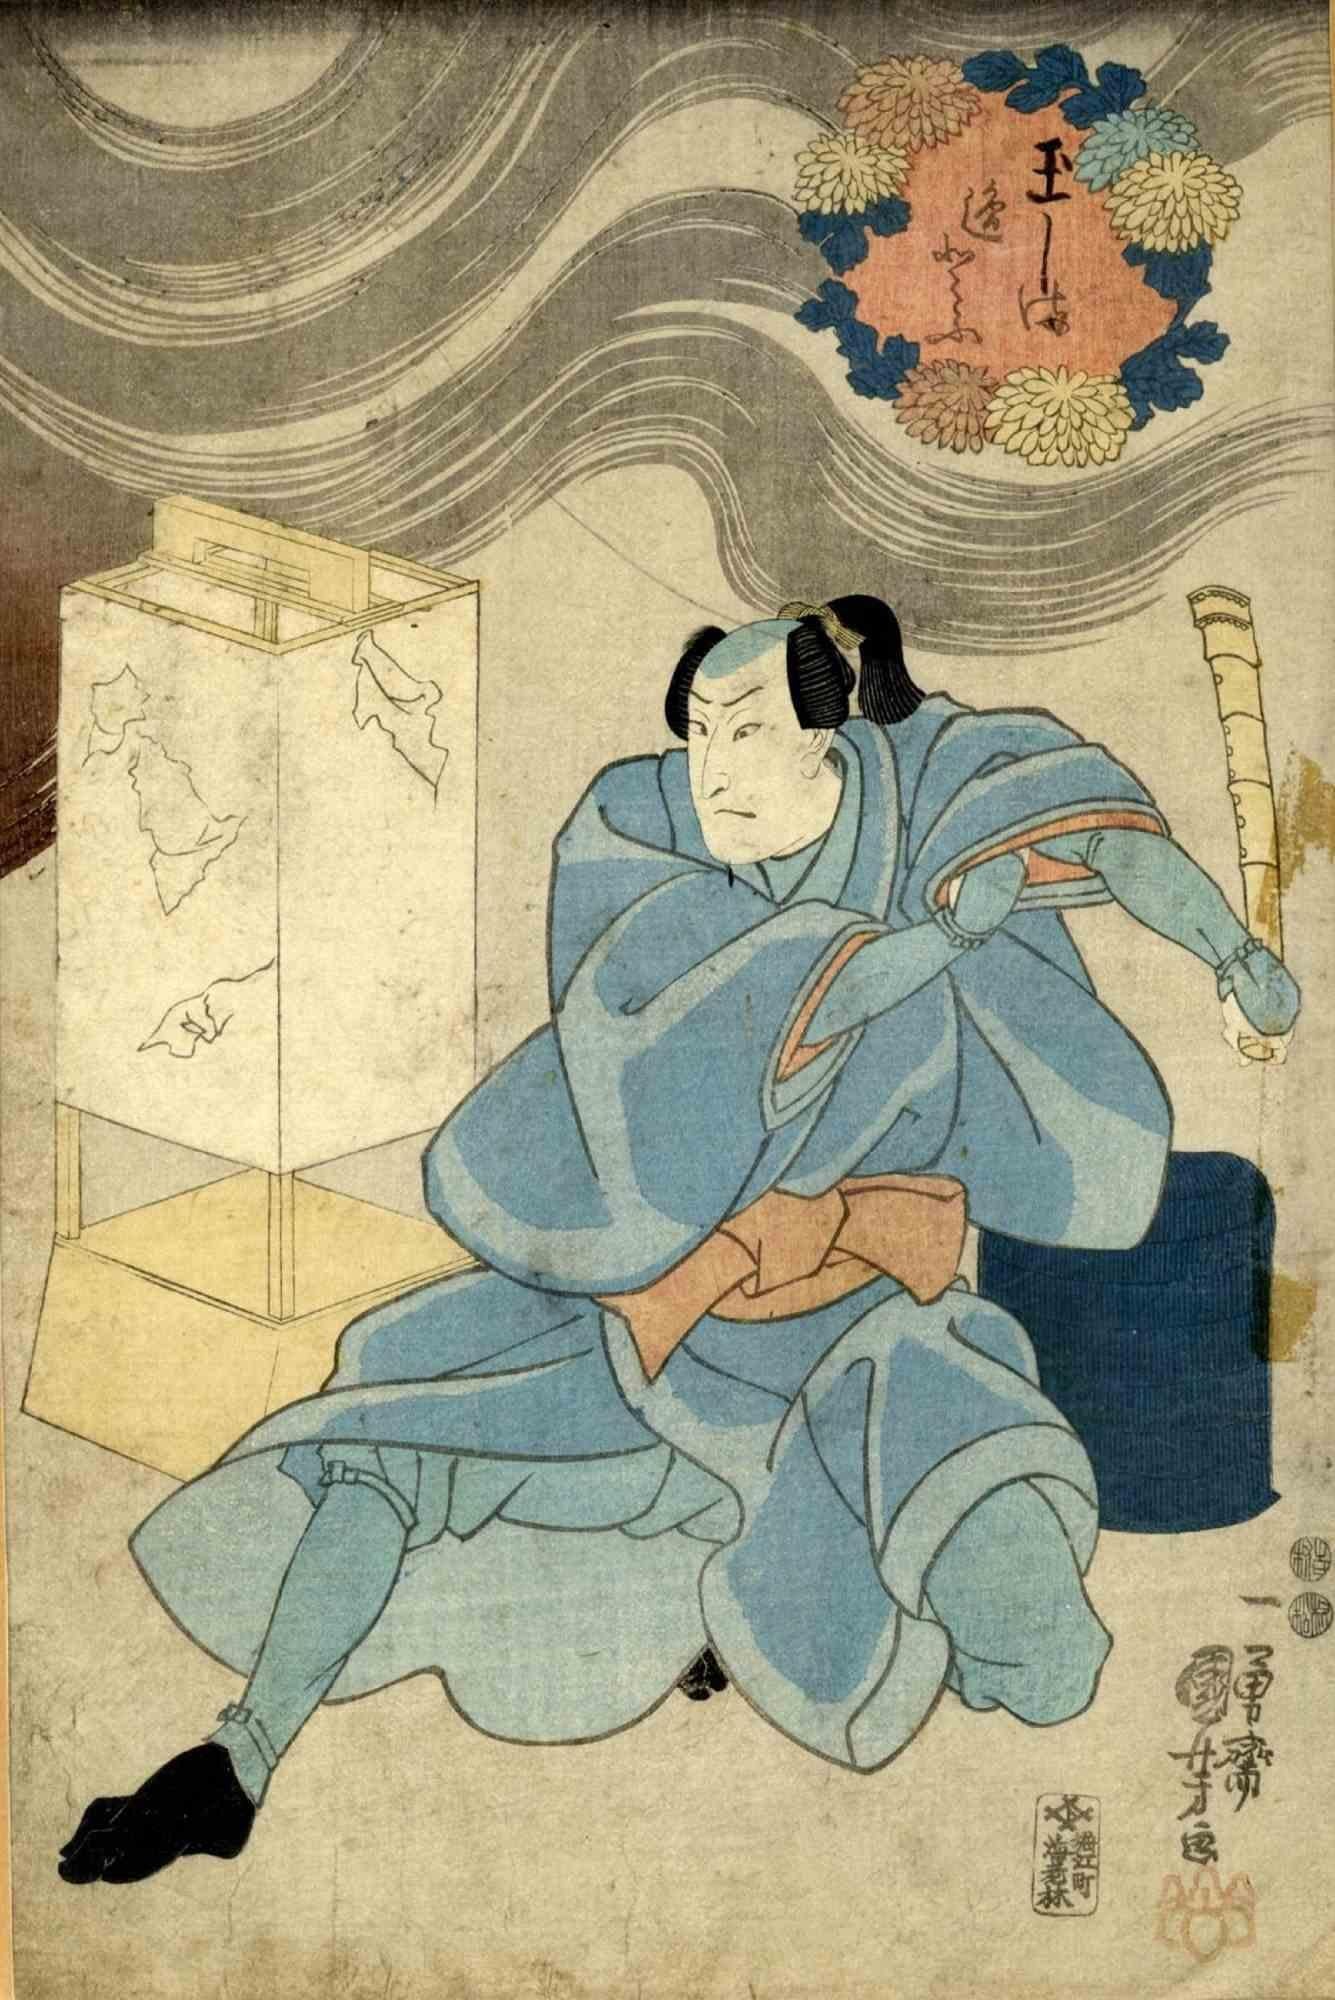 Yakushae Aizurie ist ein Originalkunstwerk, das Utagawa Kuniyoshi (1. Januar 1798 - 14. April 1861) in den Jahren 1840-1843 geschaffen hat.

Holzschnitt.

Schauspieler in der Rolle des Wandermönchs Suzuki Saburo in dem Stück Tenjiku Tokubê Ikoku